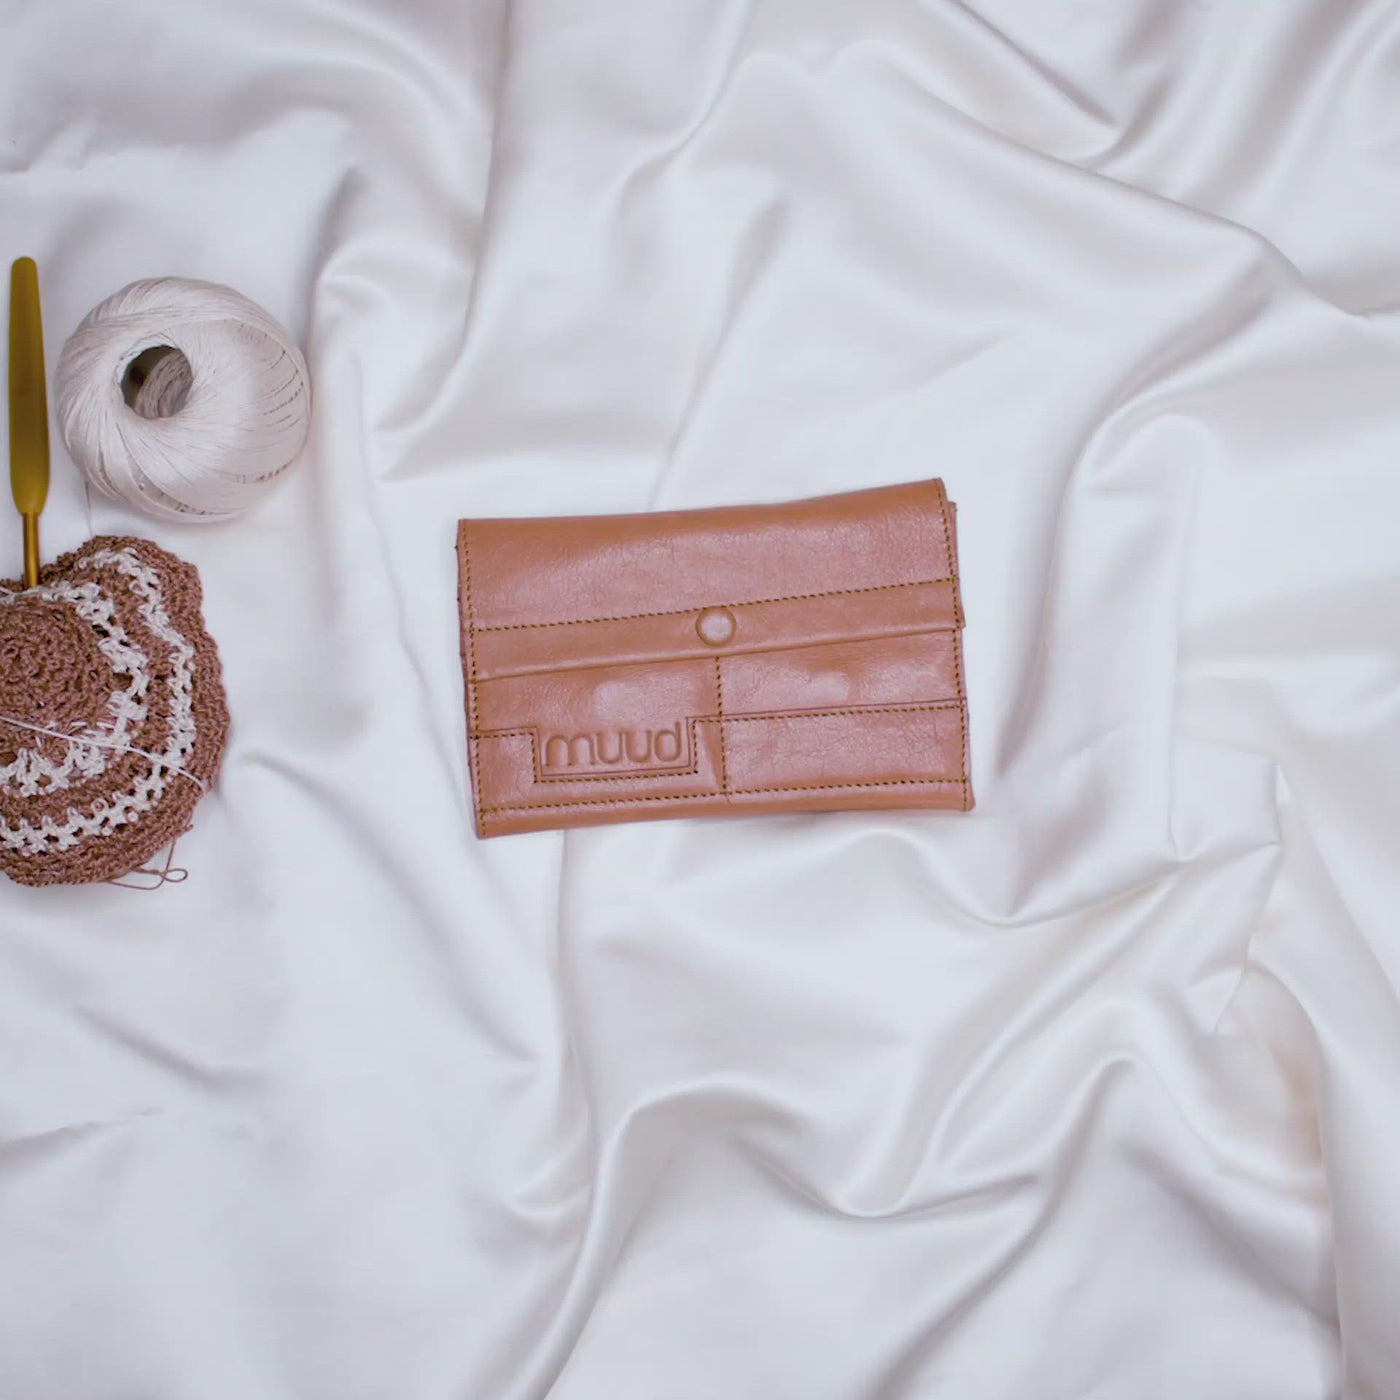 Hala crochet case in whisky for storing of crochet hooks and stitch markers.  Læder etui til opbevaring af hækle nåle og maskemarkører